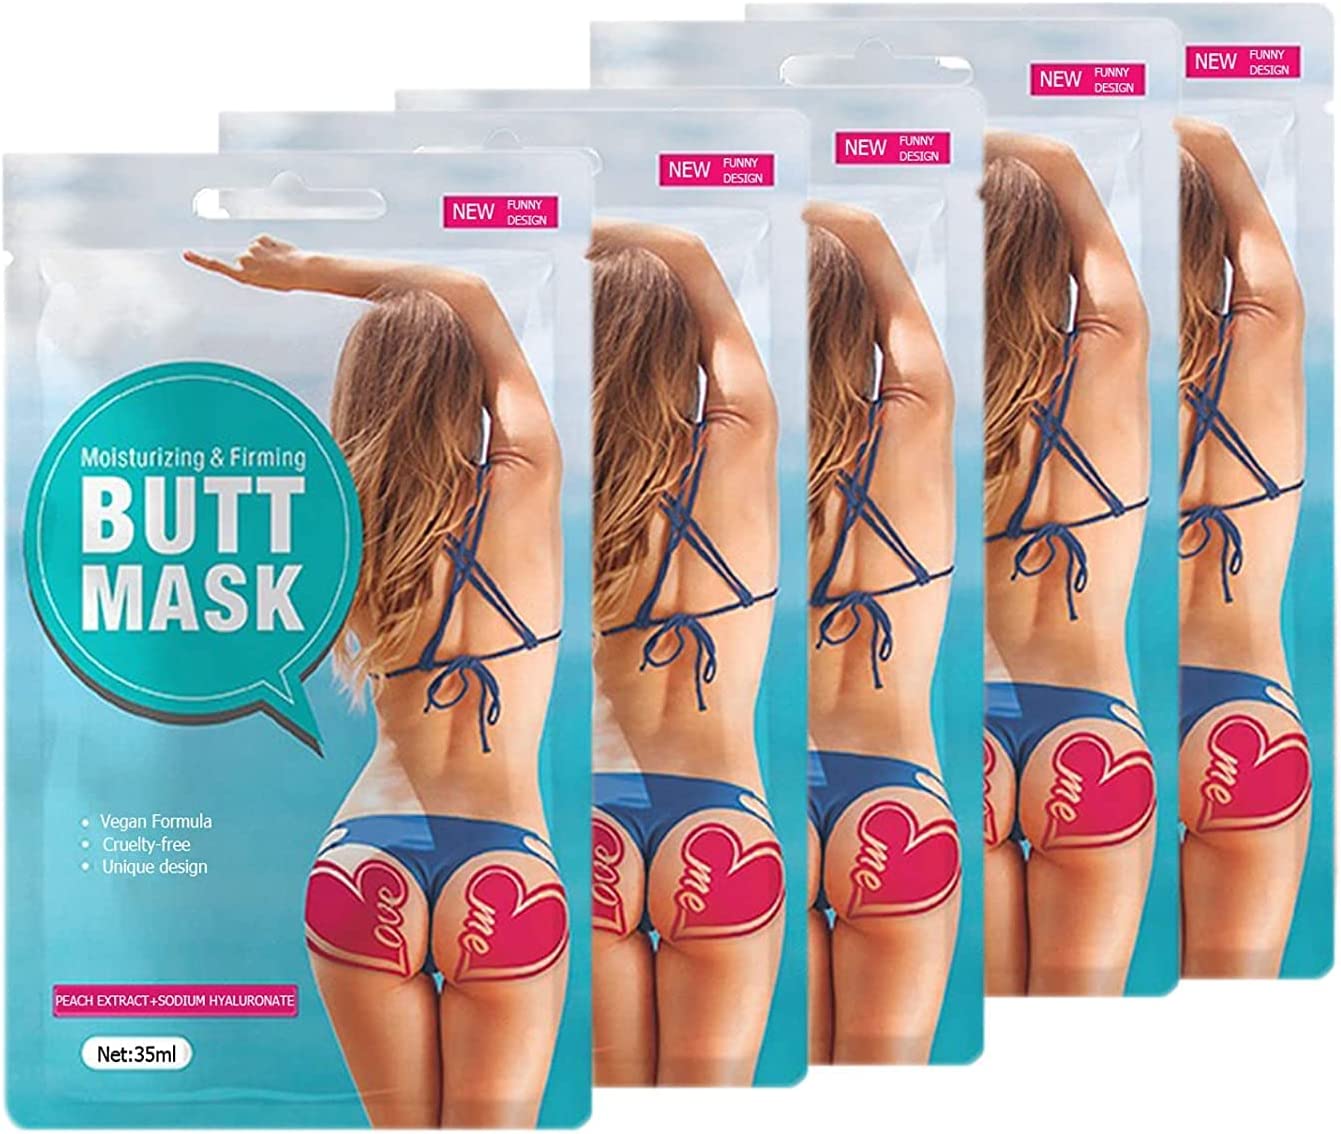 Kit da 5 maschere per glutei in fogli per aiutare a rassodare, idratare, tonificare e ringiovanire la pelle dei glutei Elitzia ETBS212 Rosa scuro